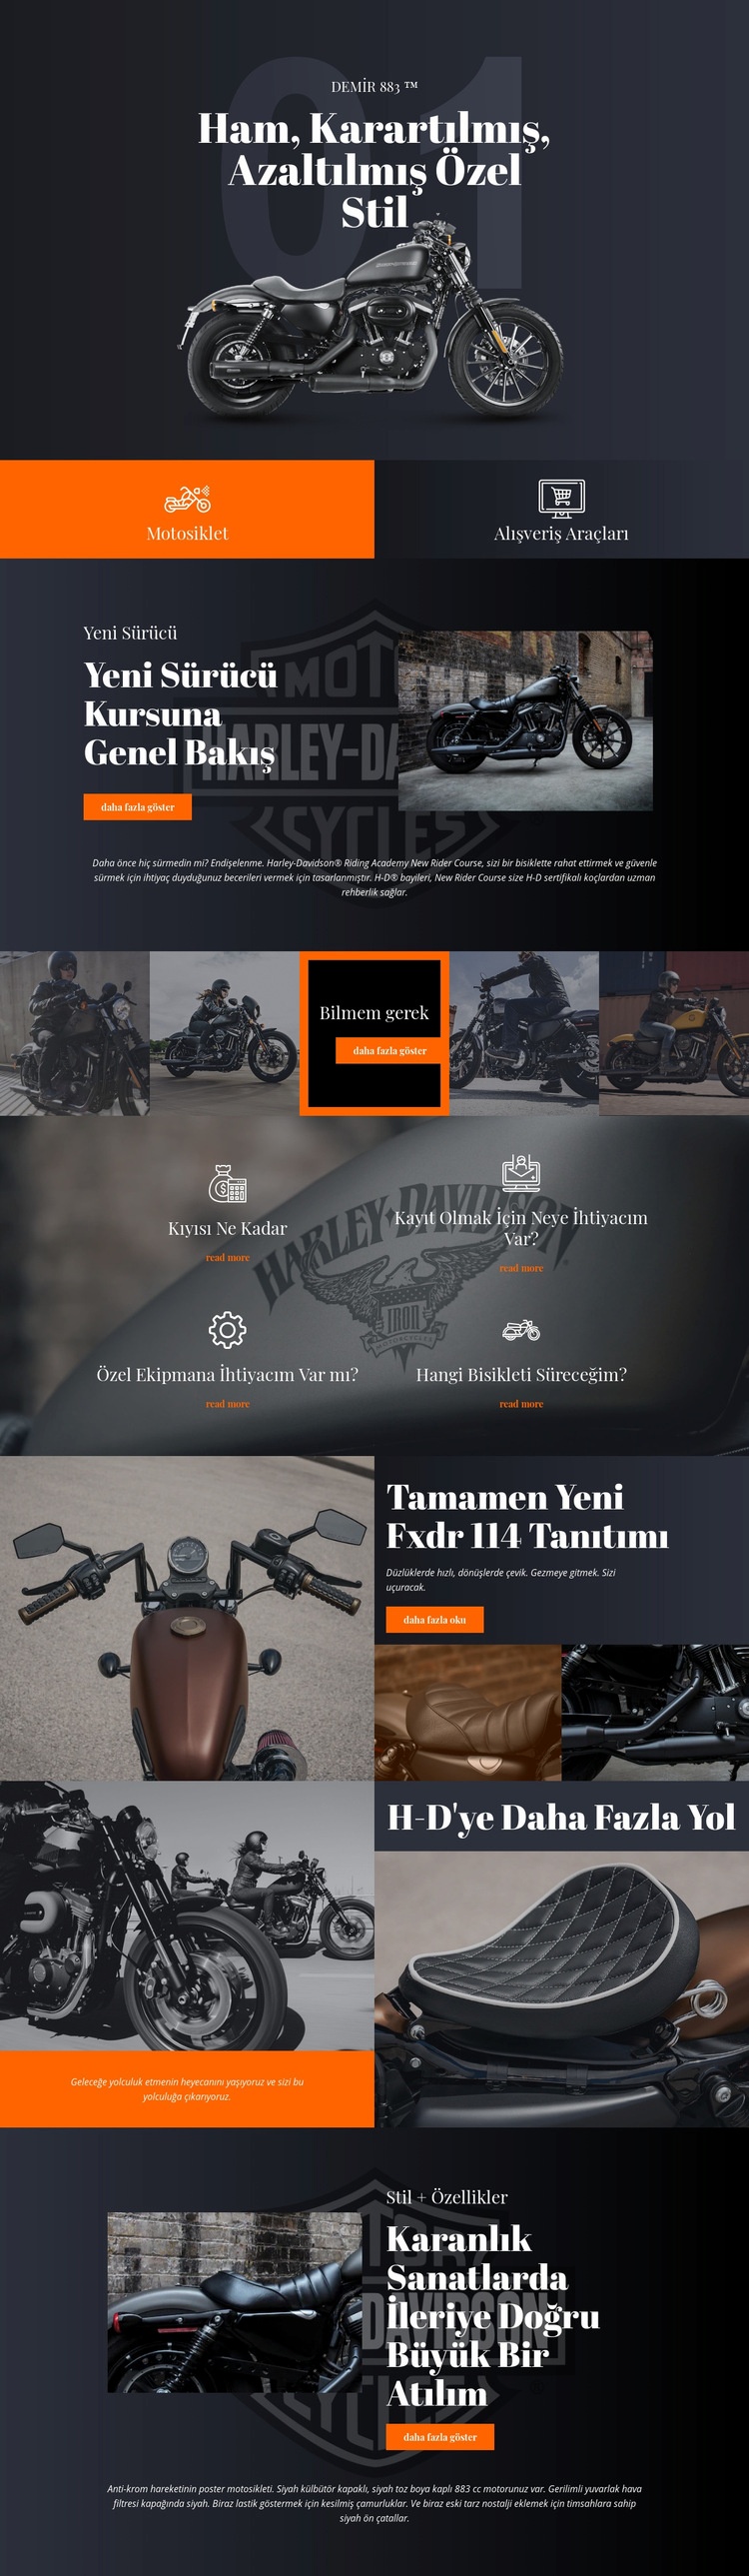 Harley Davidson Web Sitesi Mockup'ı